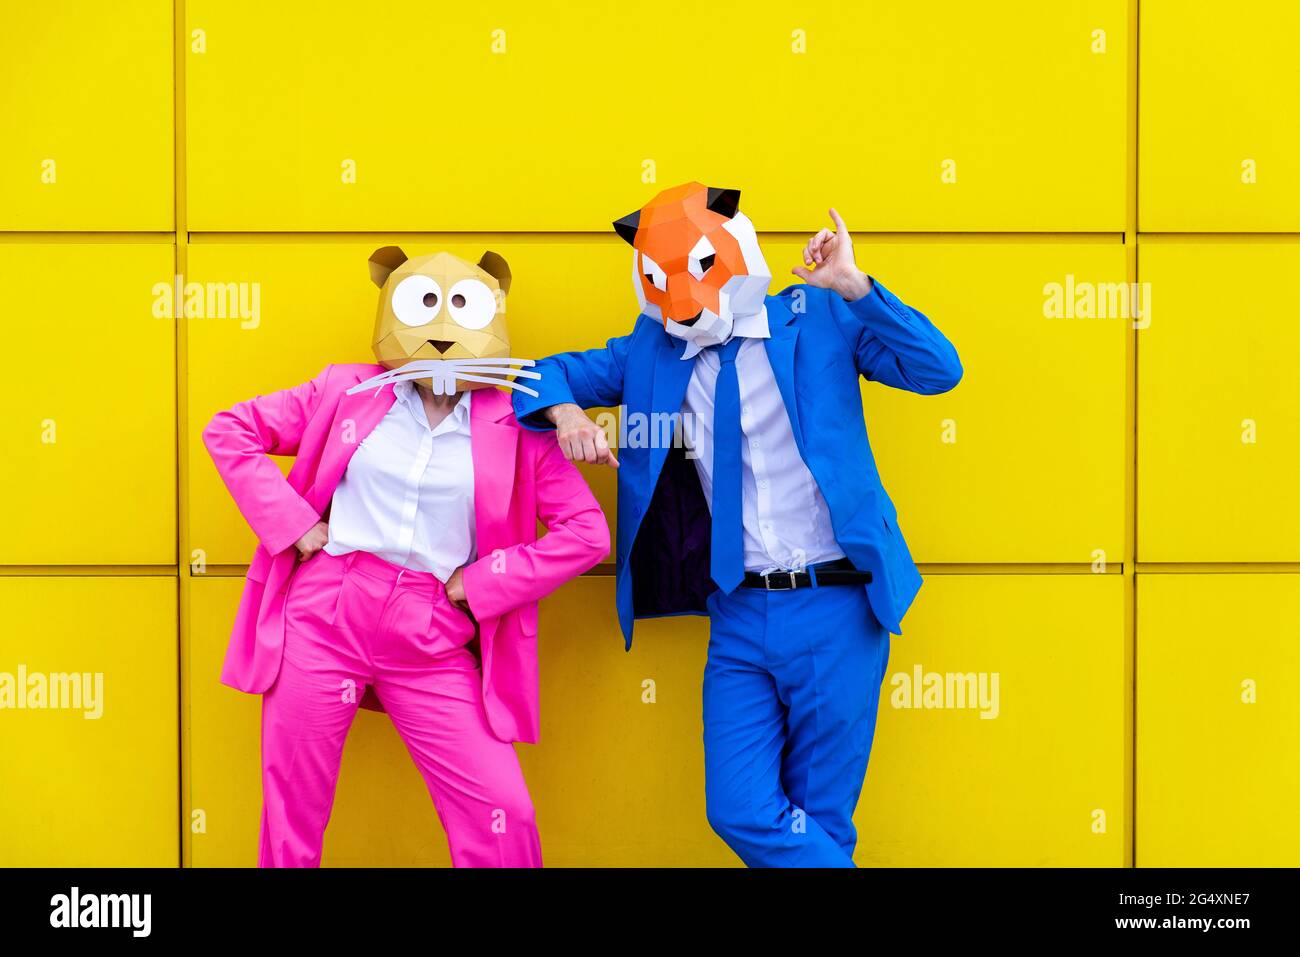 Homme et femme portant des costumes vibrants et des masques pour animaux se posant ensemble contre le mur jaune Banque D'Images